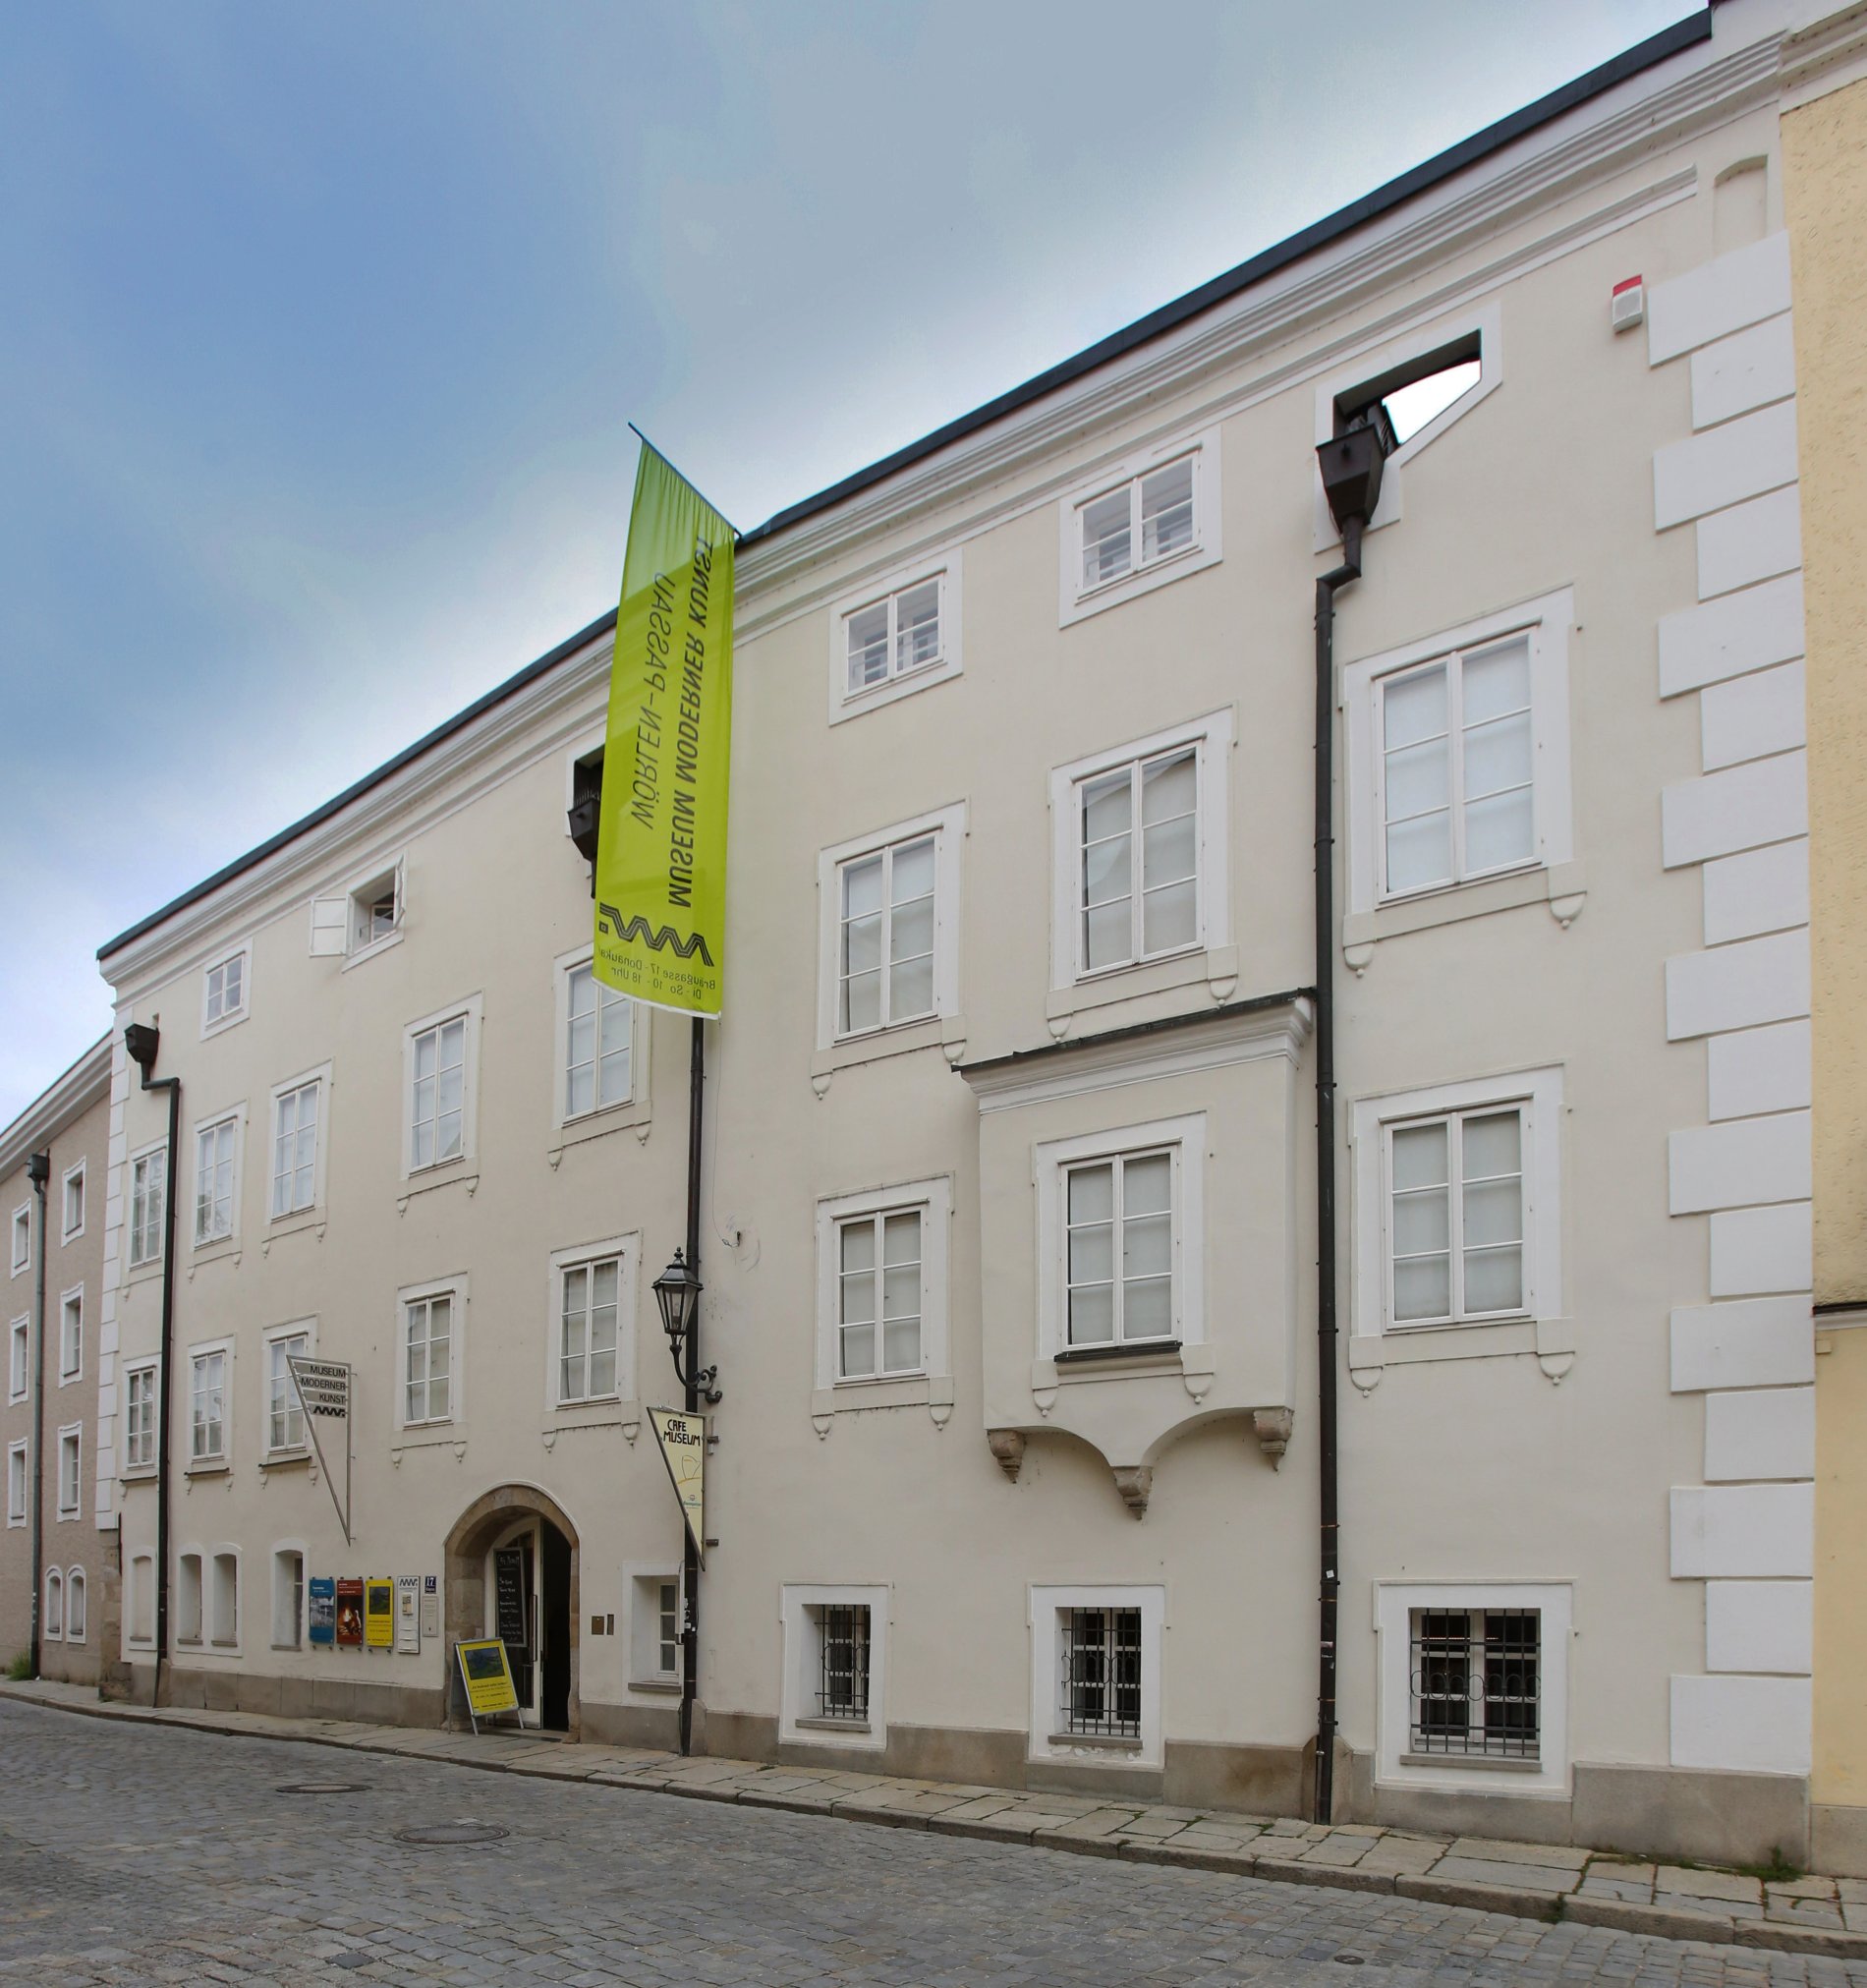 Blick auf die Passauer Altstadt - hier befindet sich auch das Museum Moderner Kunst Wörlen